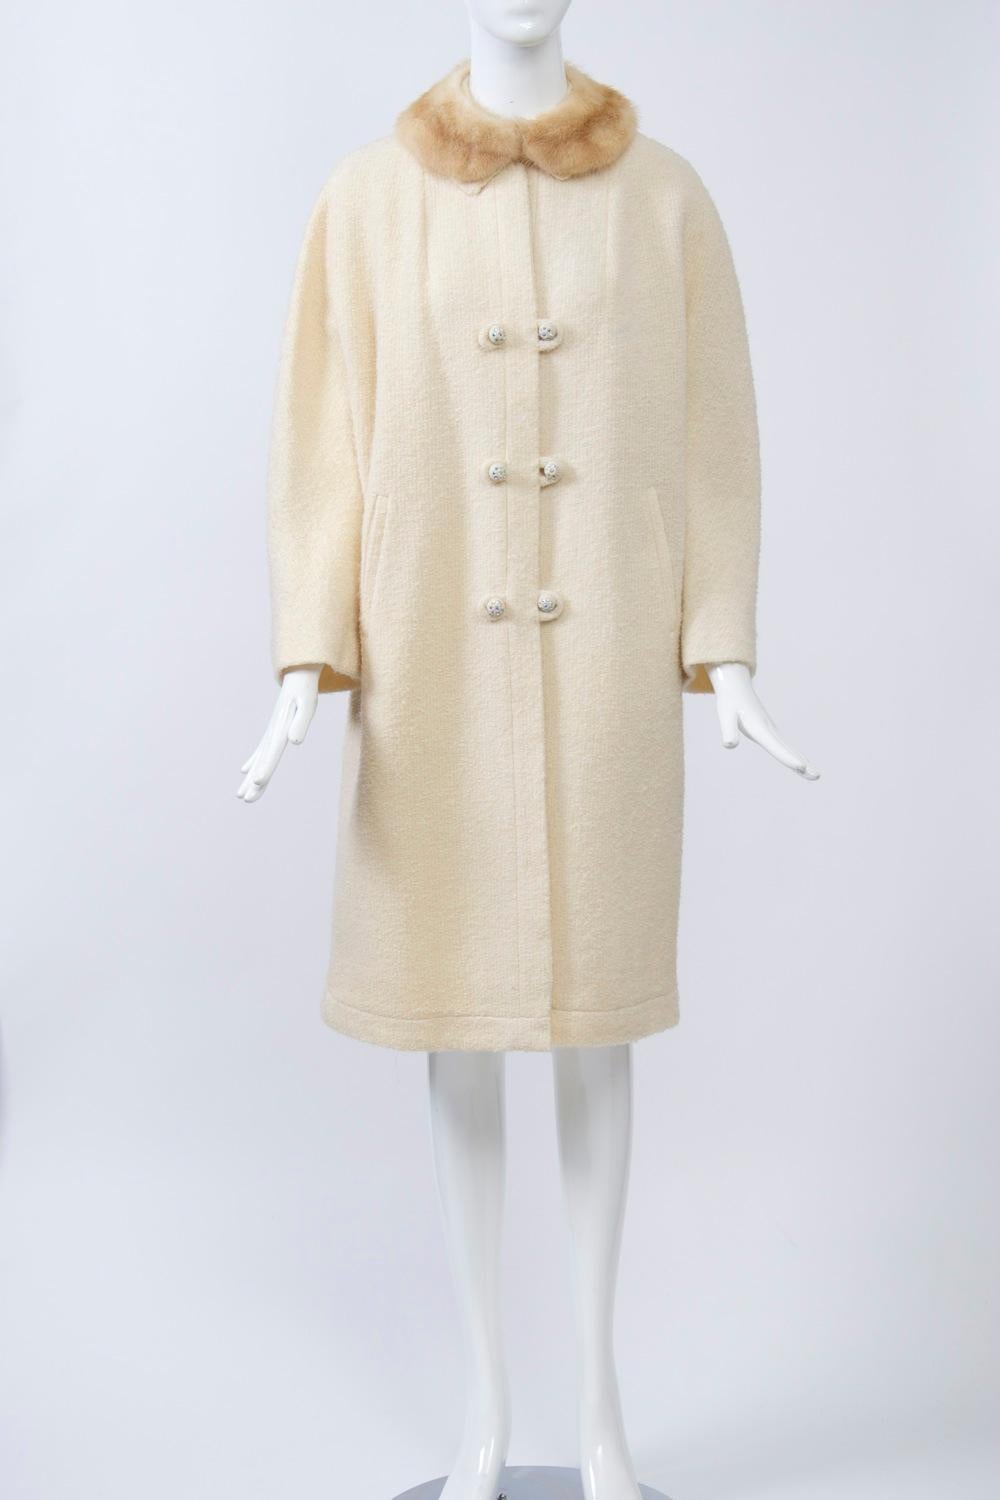 Un manteau léger des années 1960 composé d'une laine nubby blanc cassé et présentant une coupe droite avec des manches dolman, un petit col en vison et un système de fermeture à simple boutonnage avec des boucles en miroir et des boutons sertis de